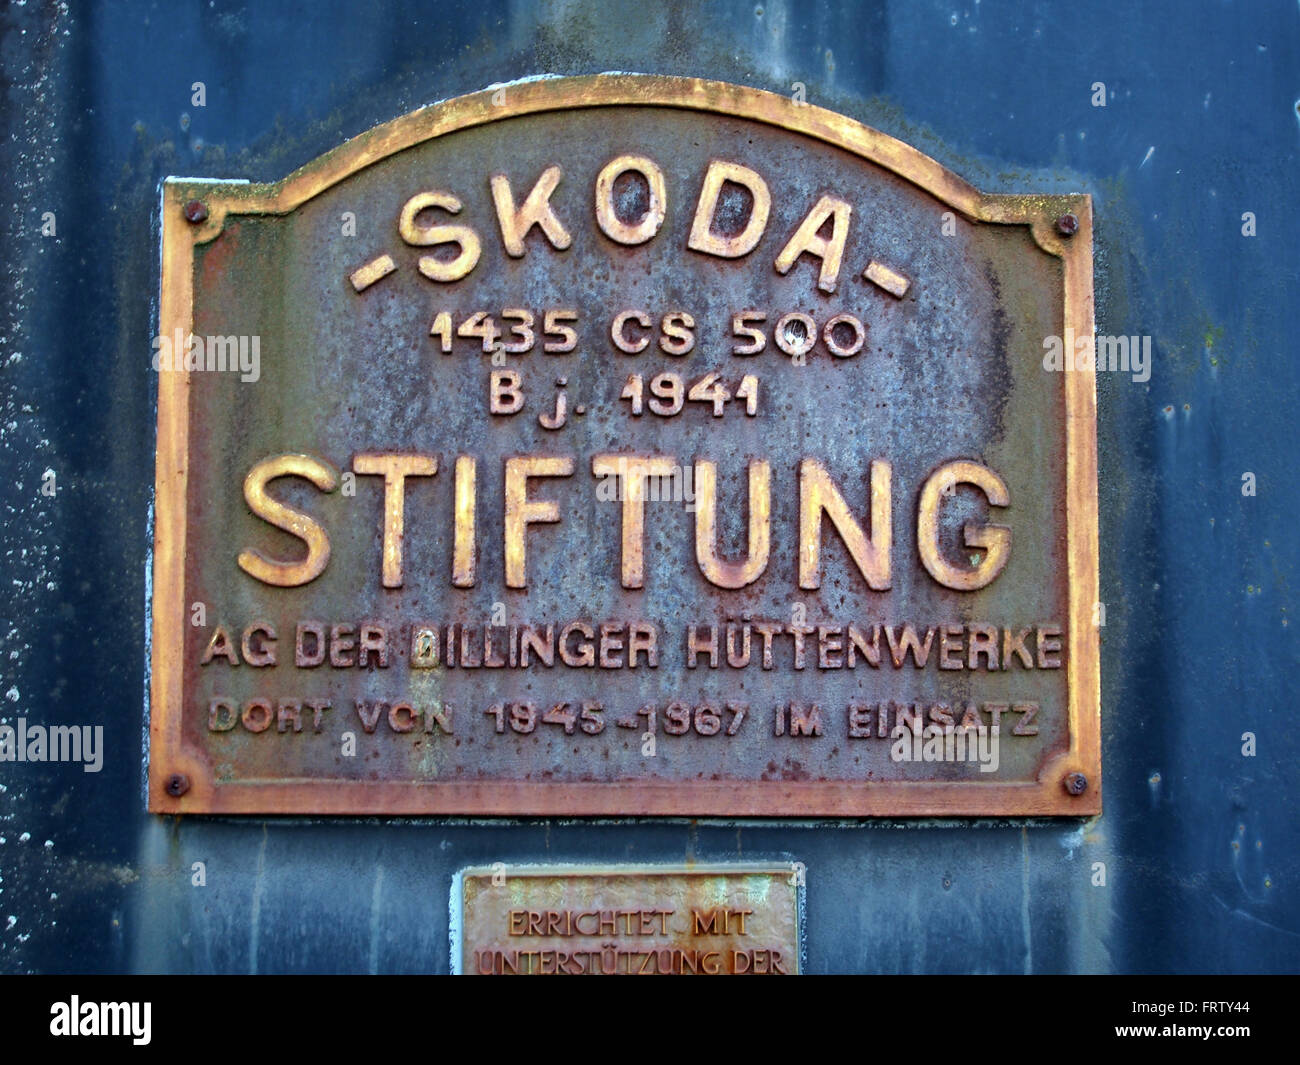 SKODA 1435 CS 500 1941 Stiftung AG der Dillinger Hüttenwerke am Bhf Bundenthal-Rumbach, Bild 1 Foto Stock